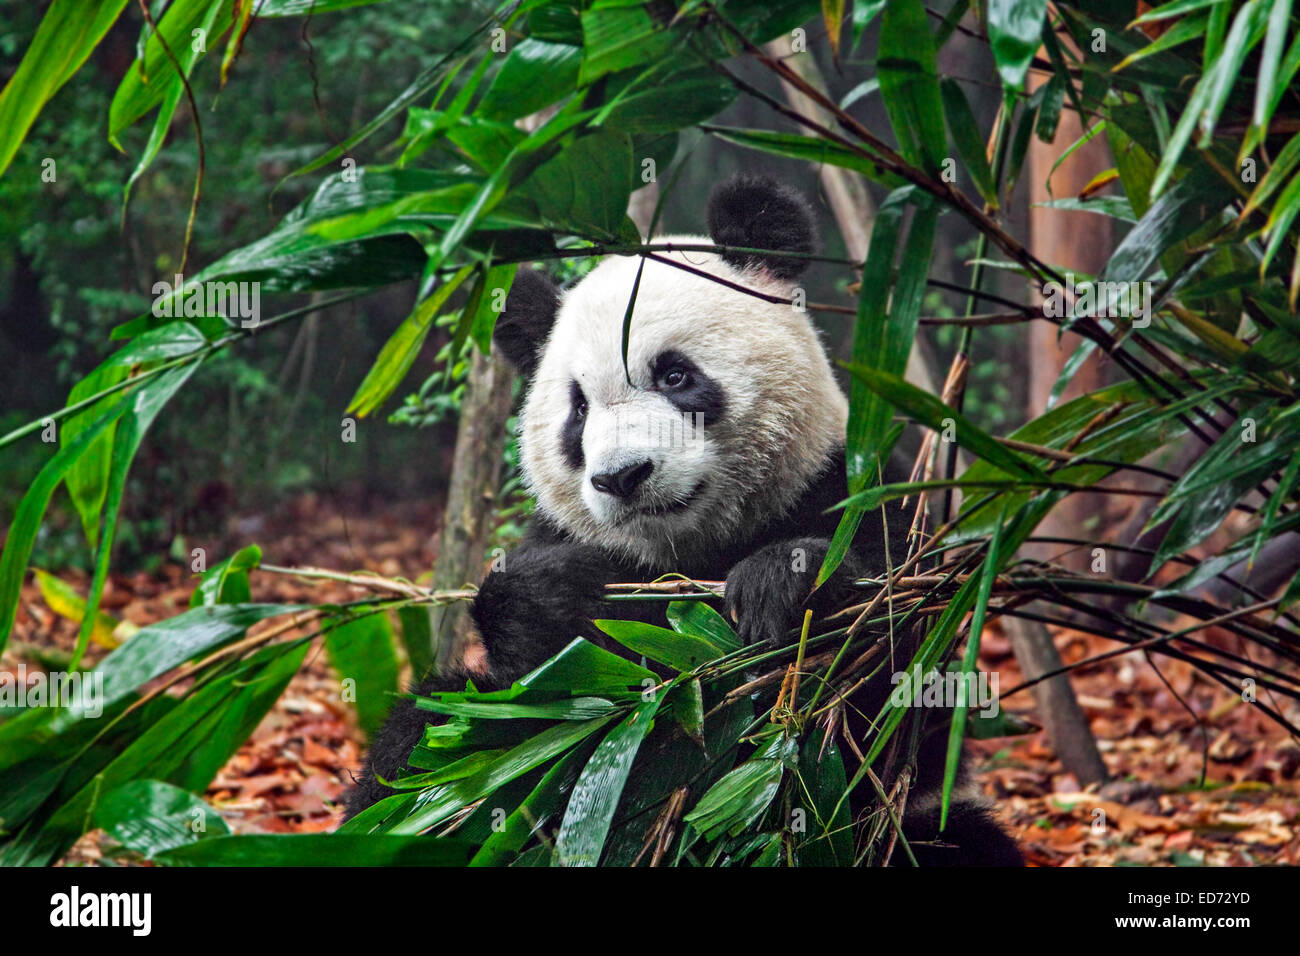 El panda gigante (Ailuropoda melanoleuca) comiendo bambú en la base de investigación Chengdu de cría de pandas gigantes, en la provincia de Sichuan, China Foto de stock